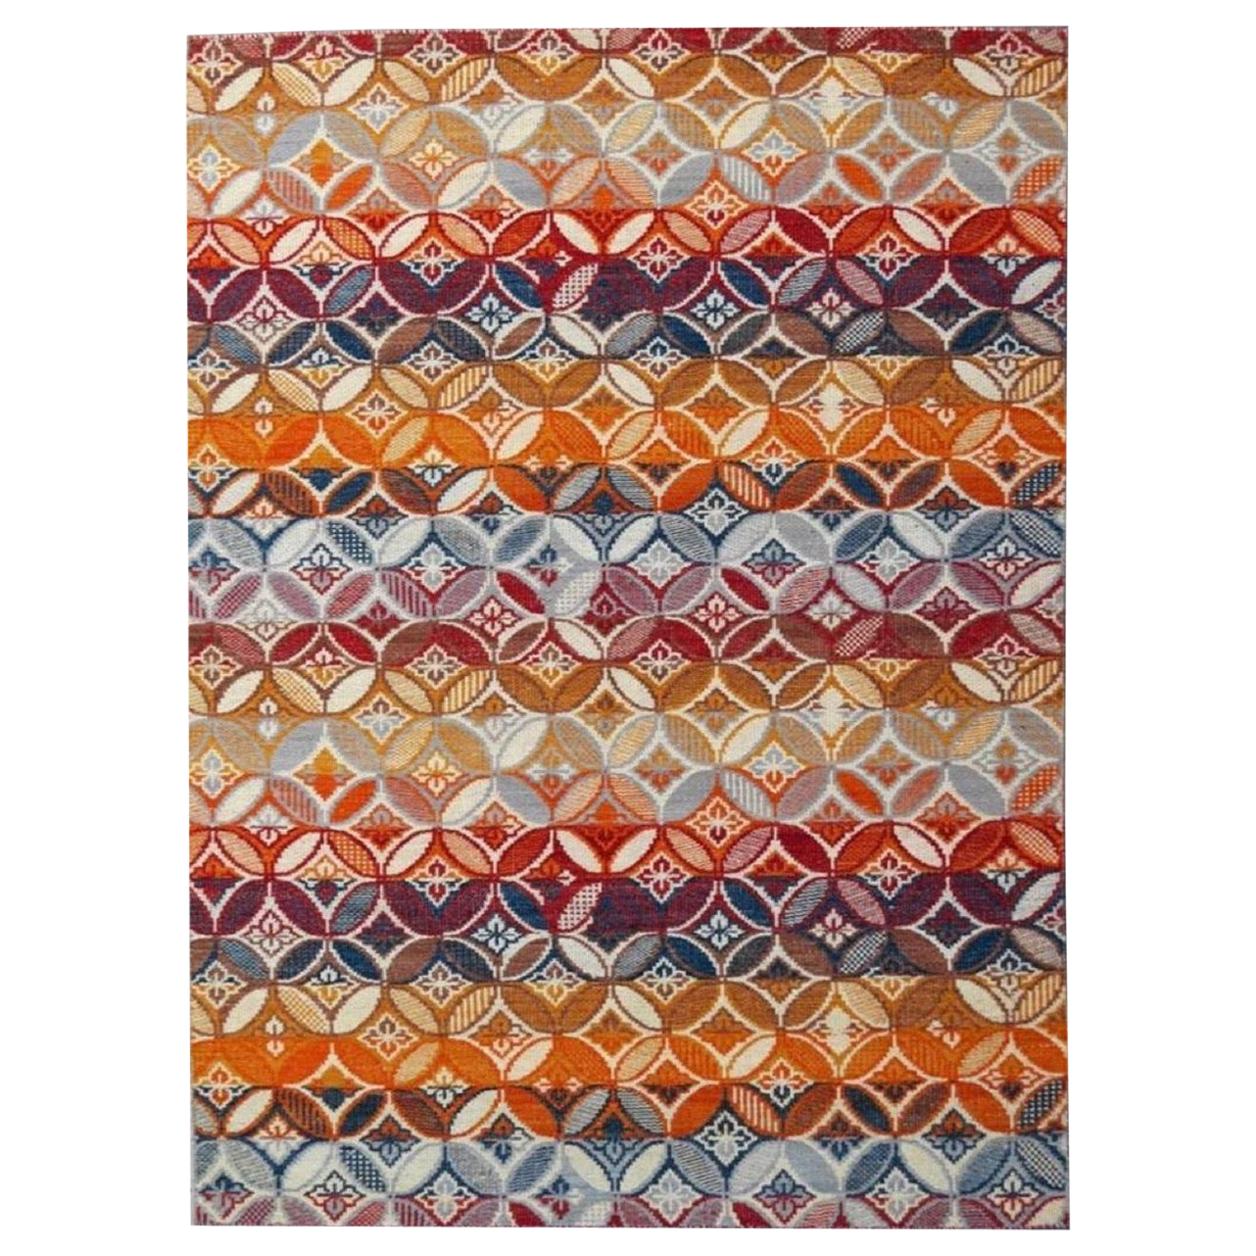 Magnifique nouveau tapis plat Kilim tissé à la main et de conception européenne